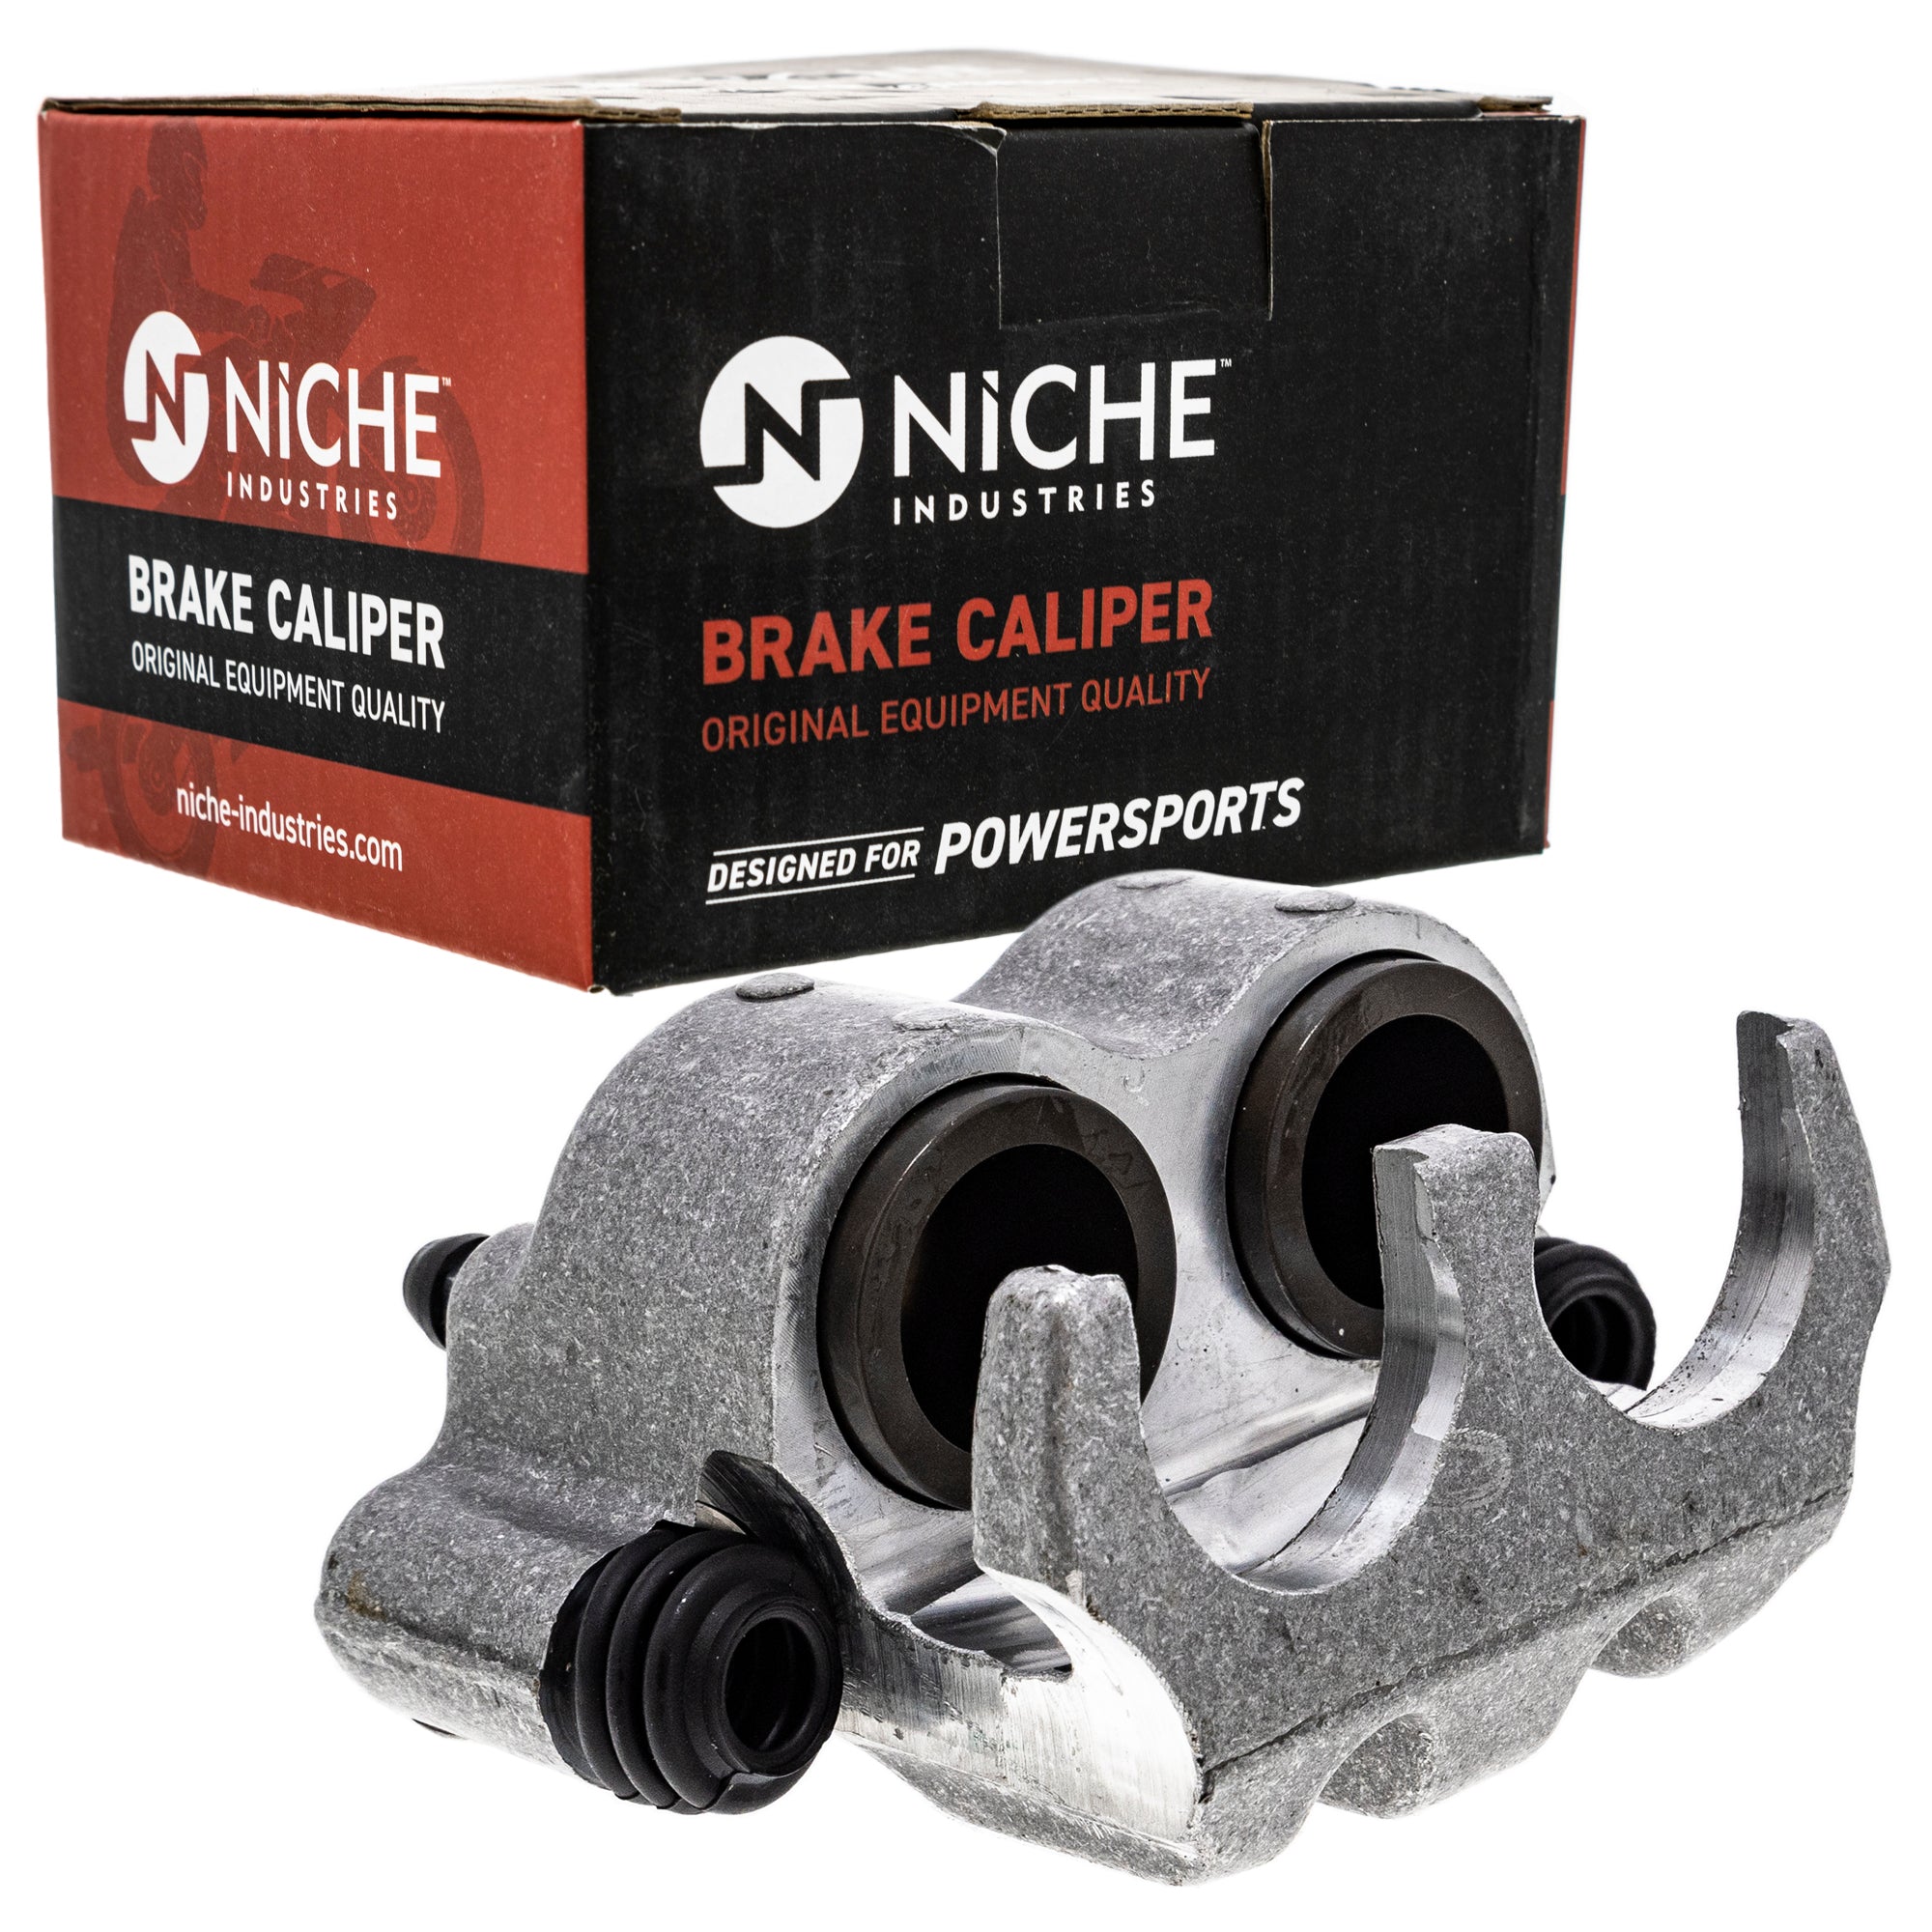 NICHE MK1001253 Brake Caliper Kit